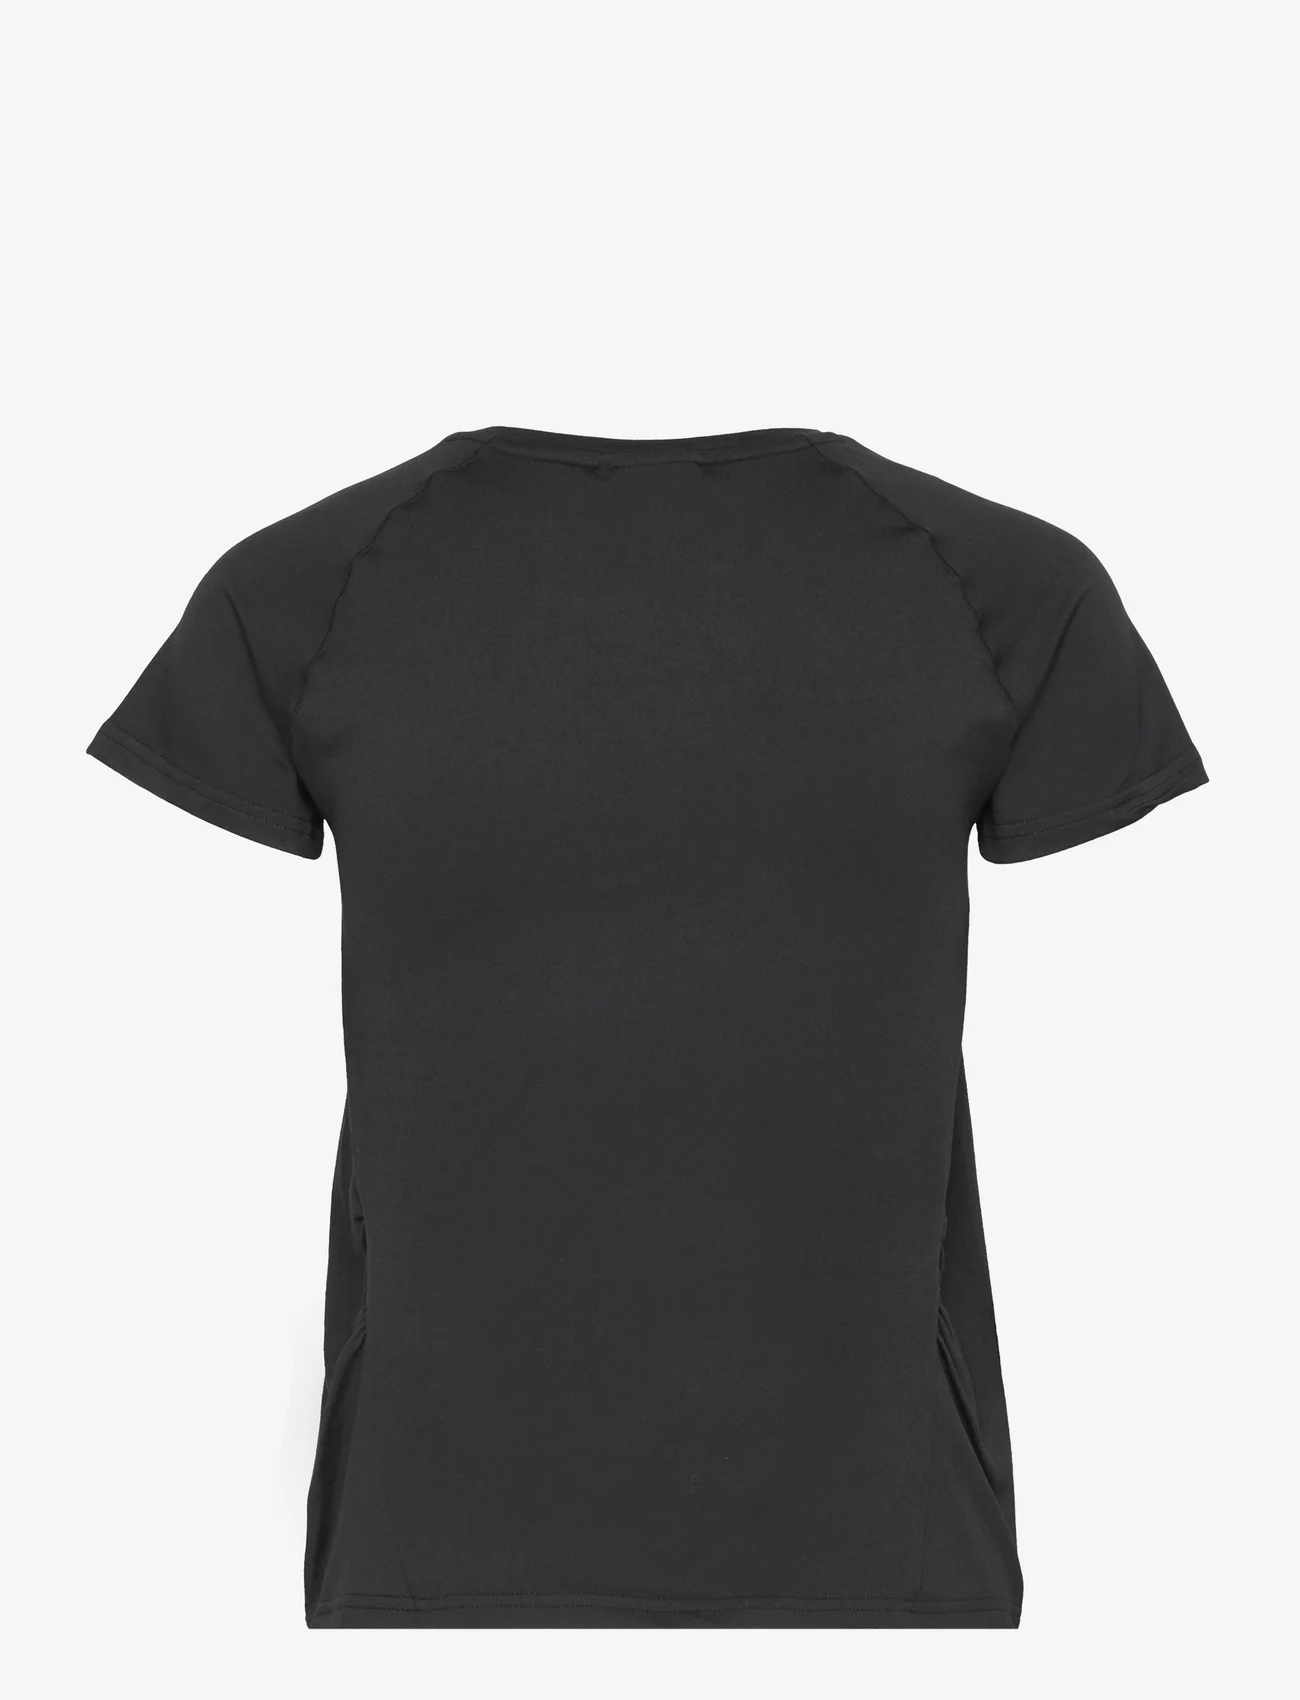 AIM'N - Soft Basic Maternity Short Sleeve - t-shirts - black - 1